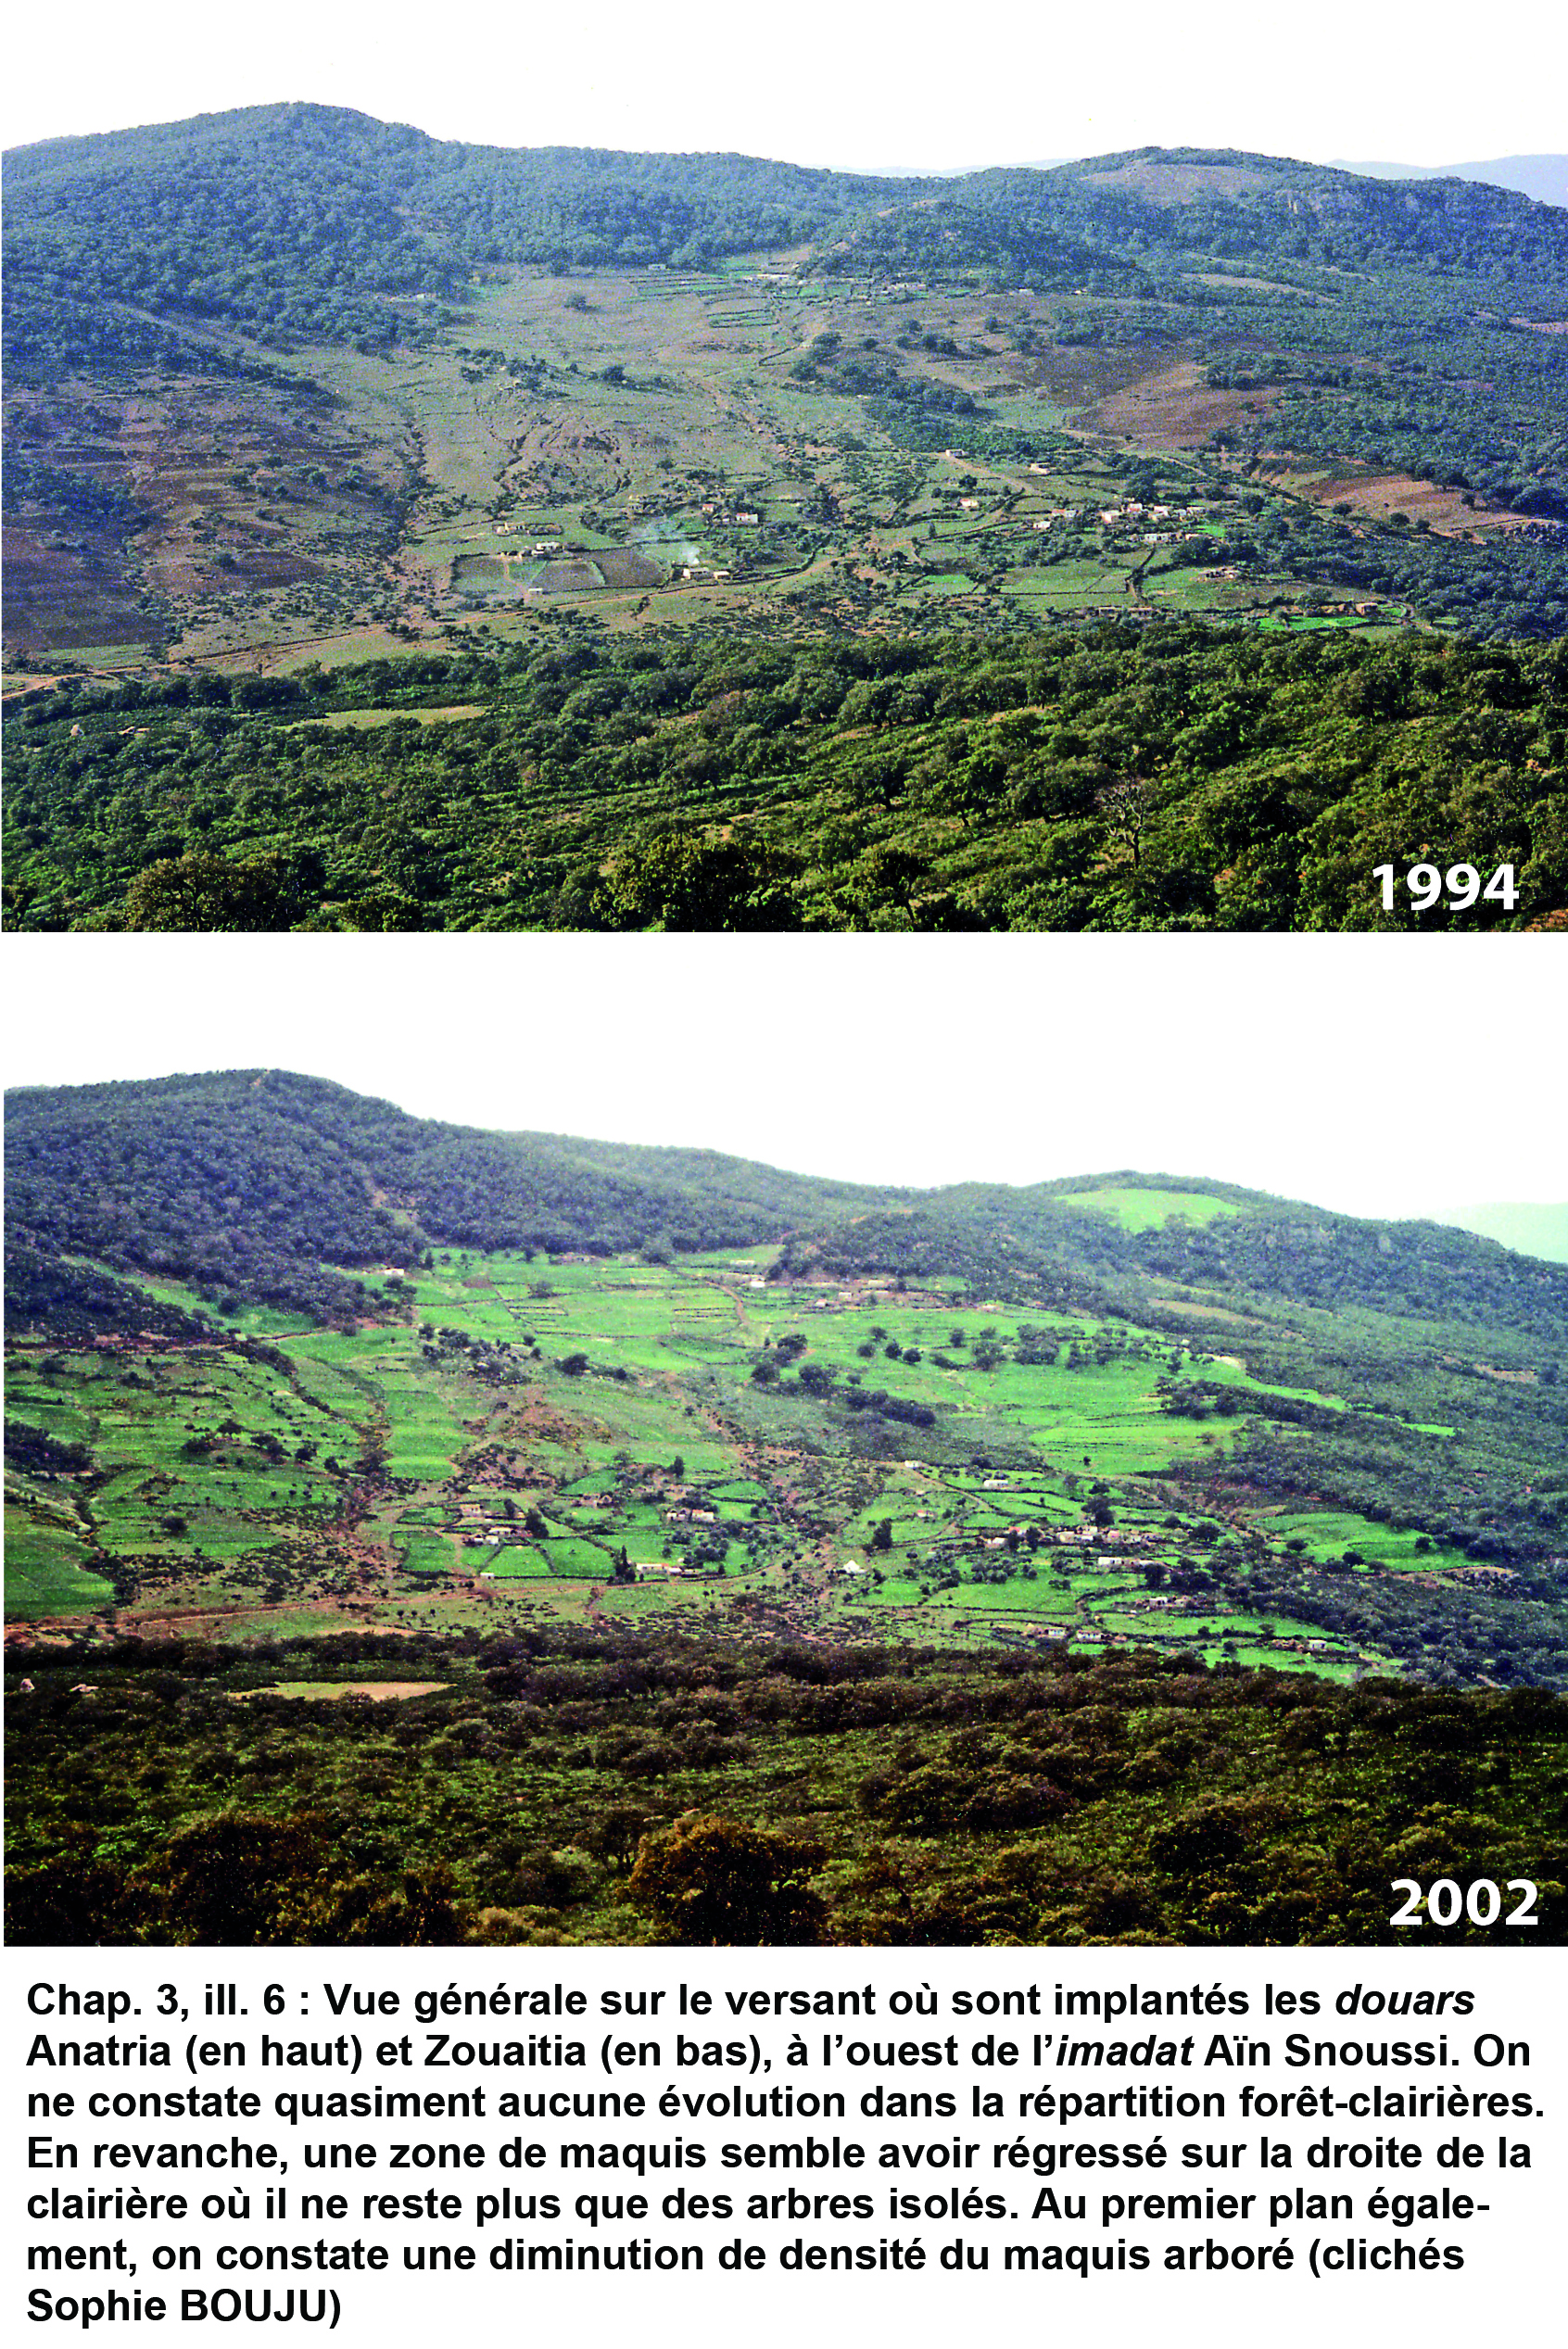 Illustration 6 : Évolution des paysages de 1994 à 2002 (imadat Aïn Snoussi)